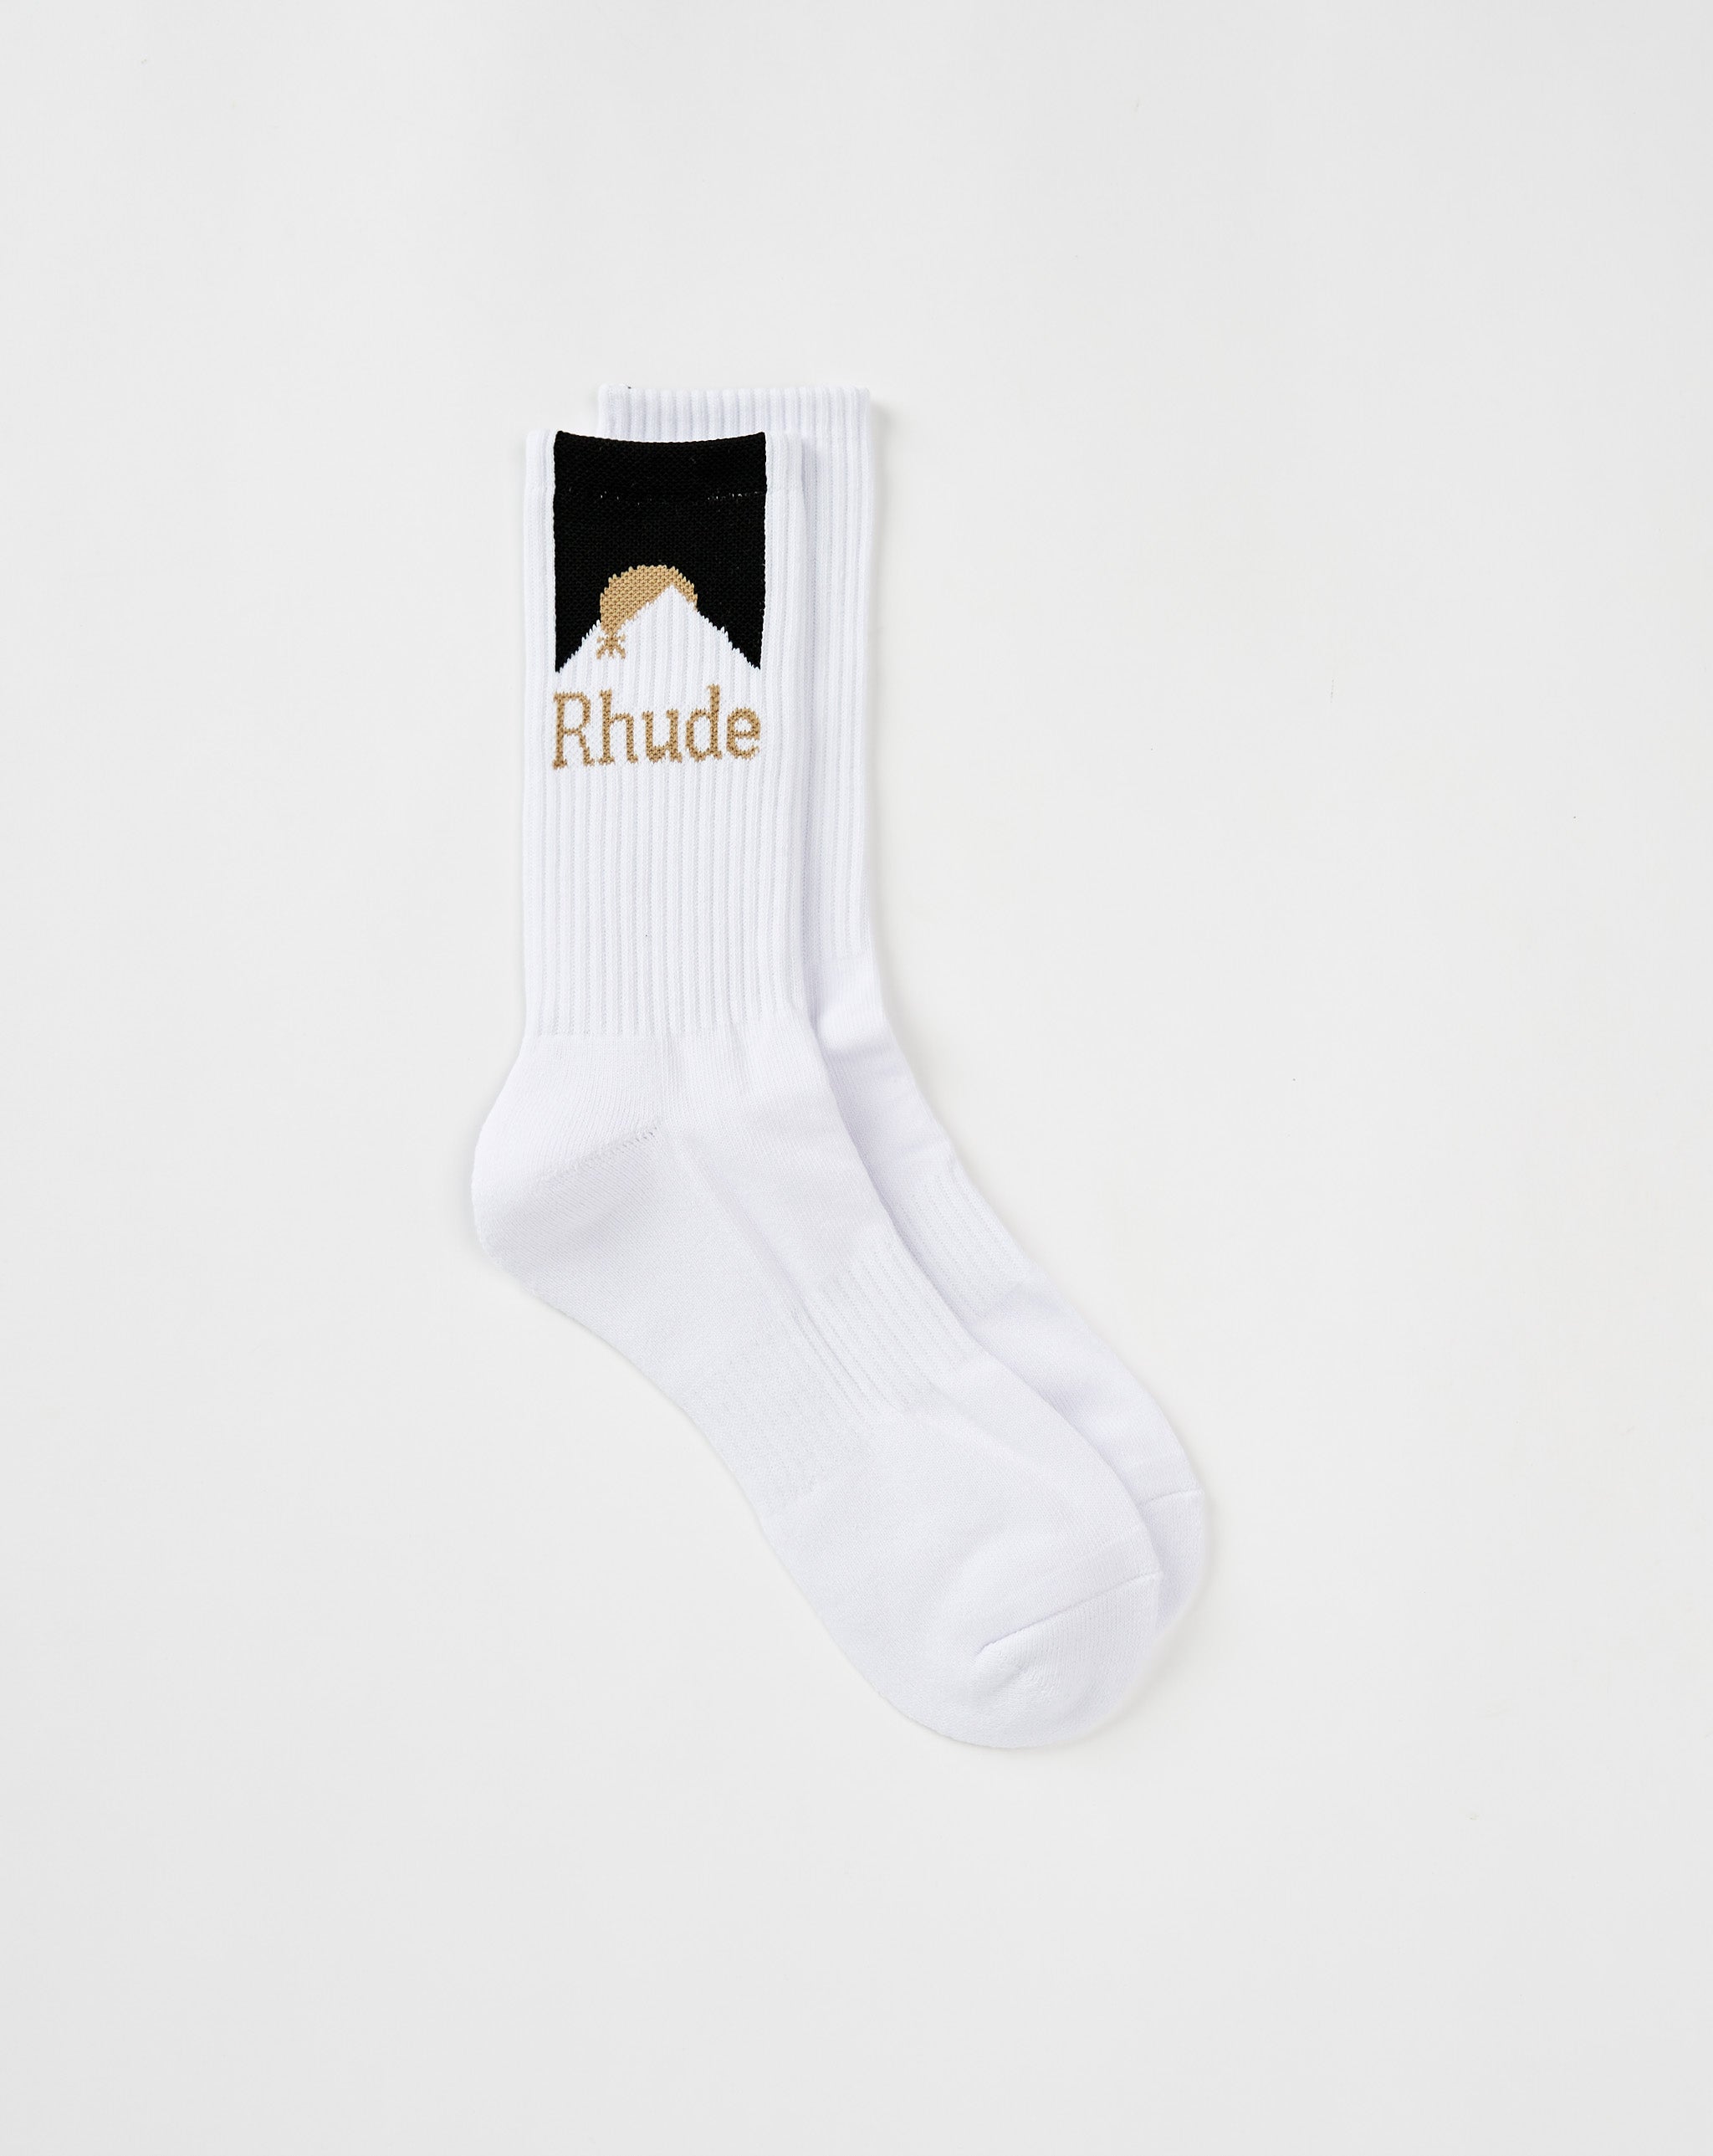 Rhude Rhude Moodlight Socks  - Cheap 127-0 Jordan outlet